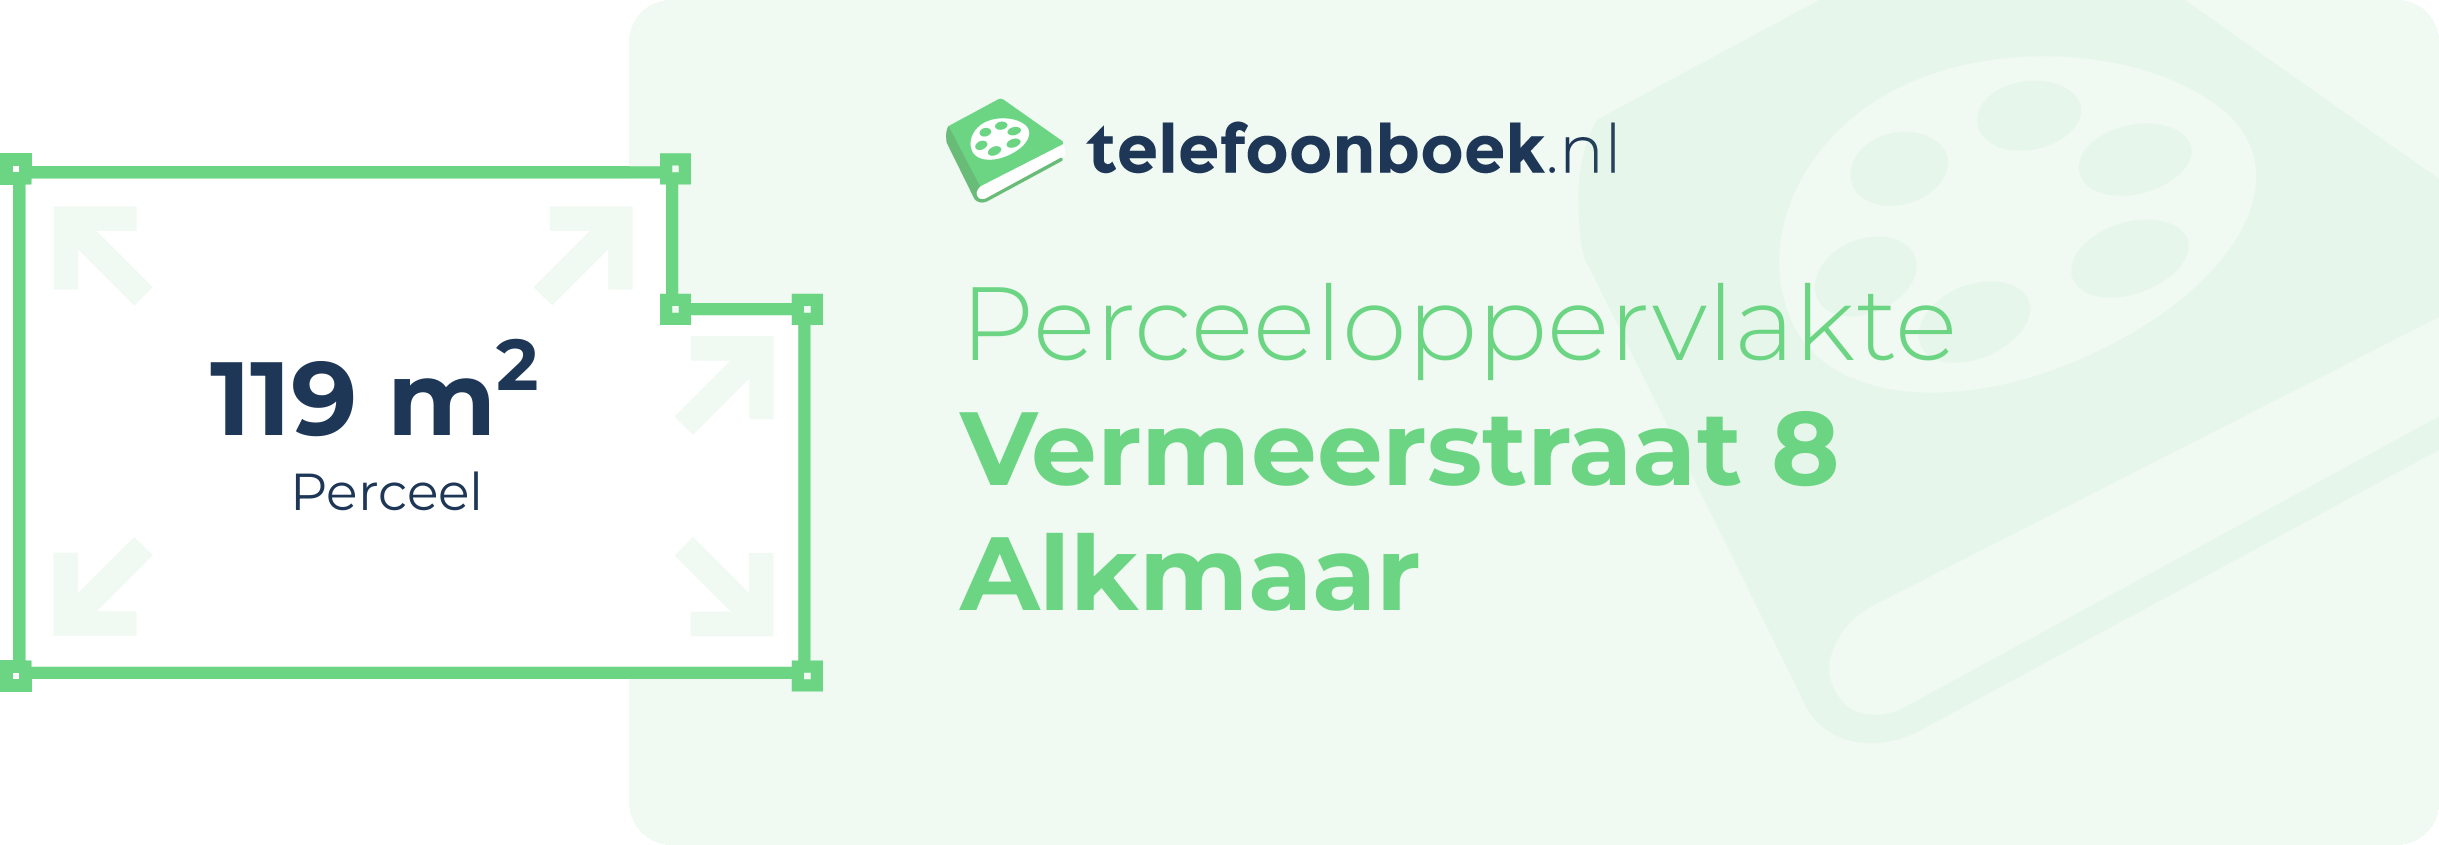 Perceeloppervlakte Vermeerstraat 8 Alkmaar